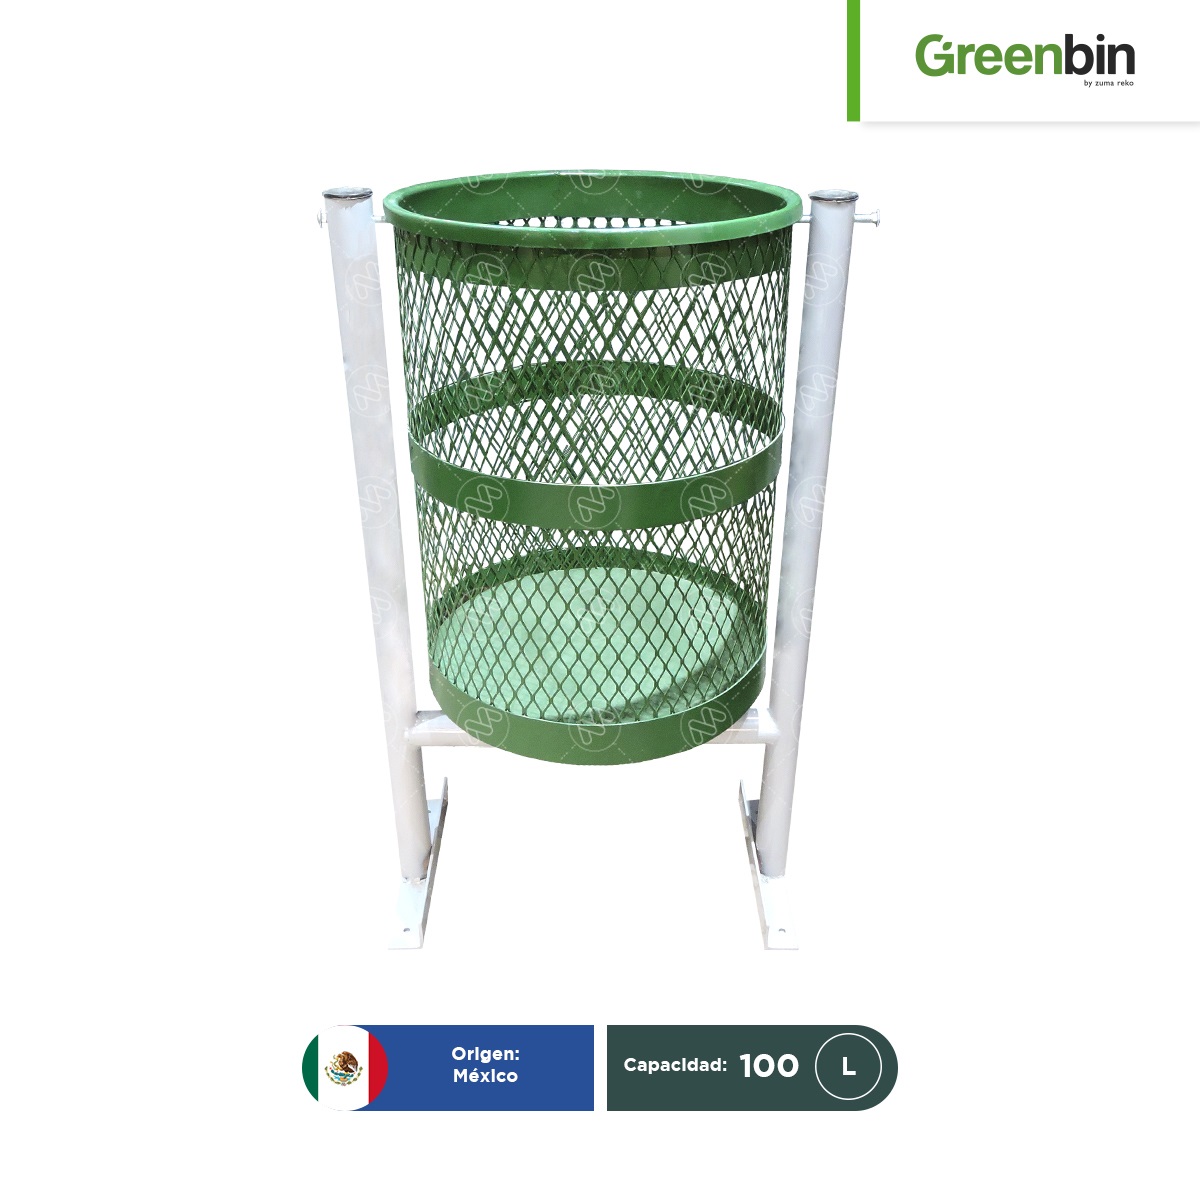 papelera urbana barcelona sencilla greenbin 100 l 001